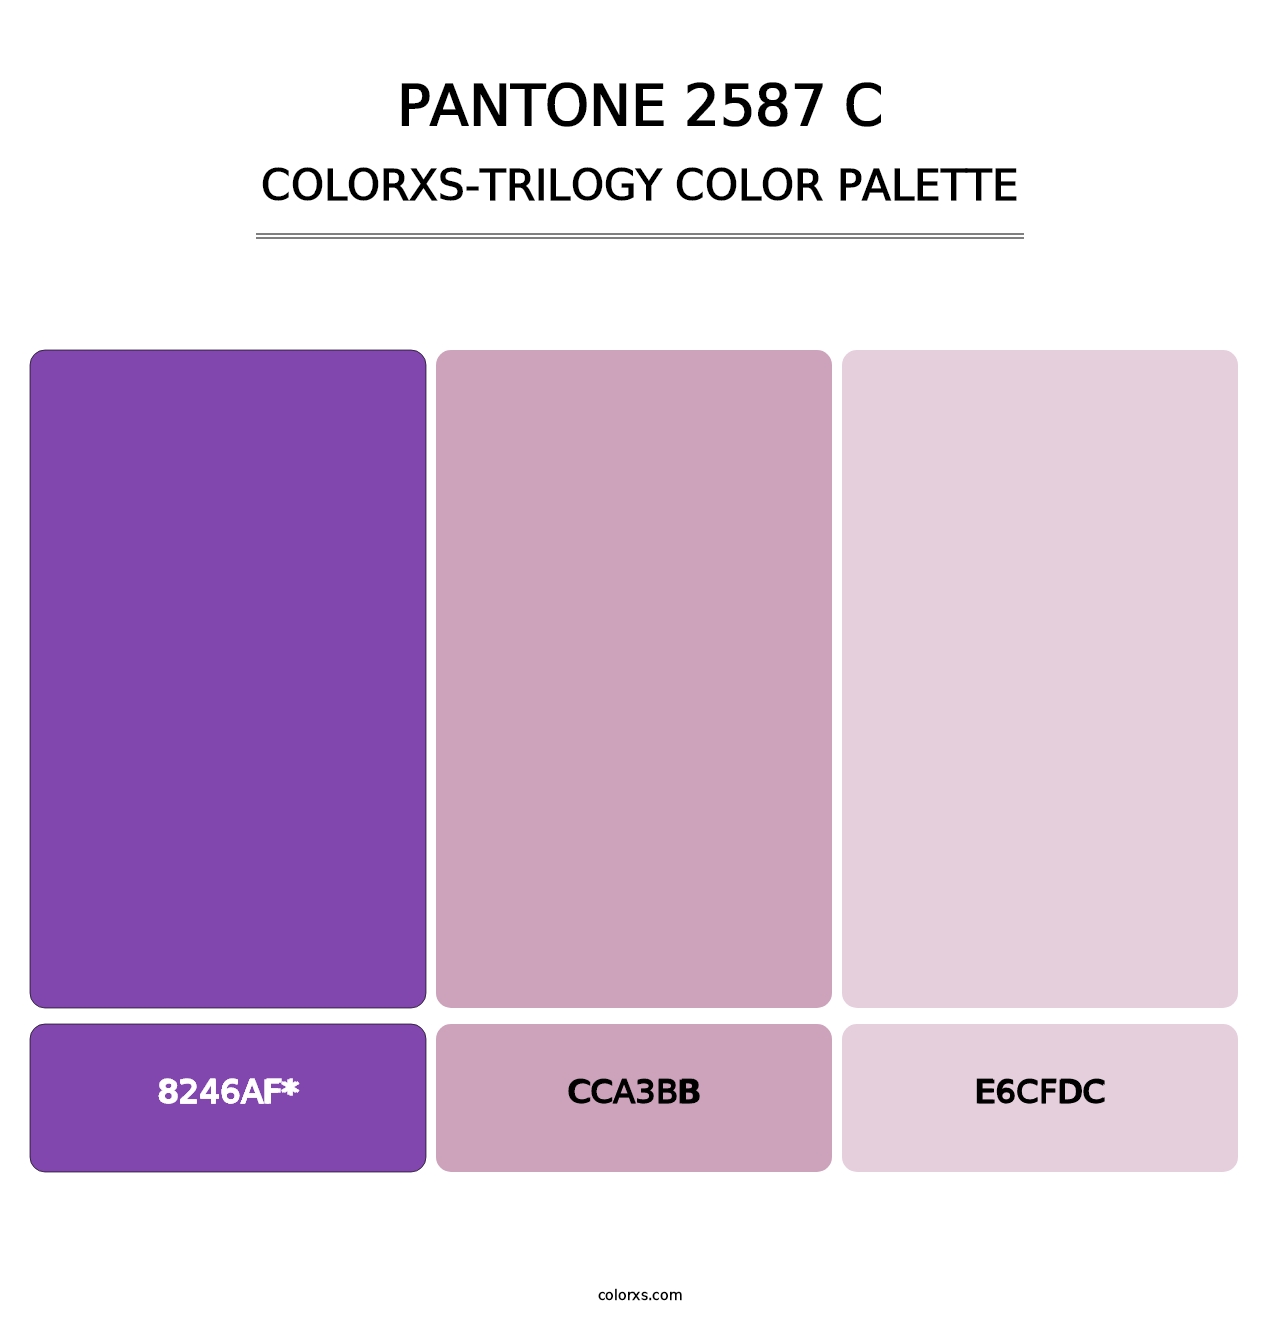 PANTONE 2587 C - Colorxs Trilogy Palette